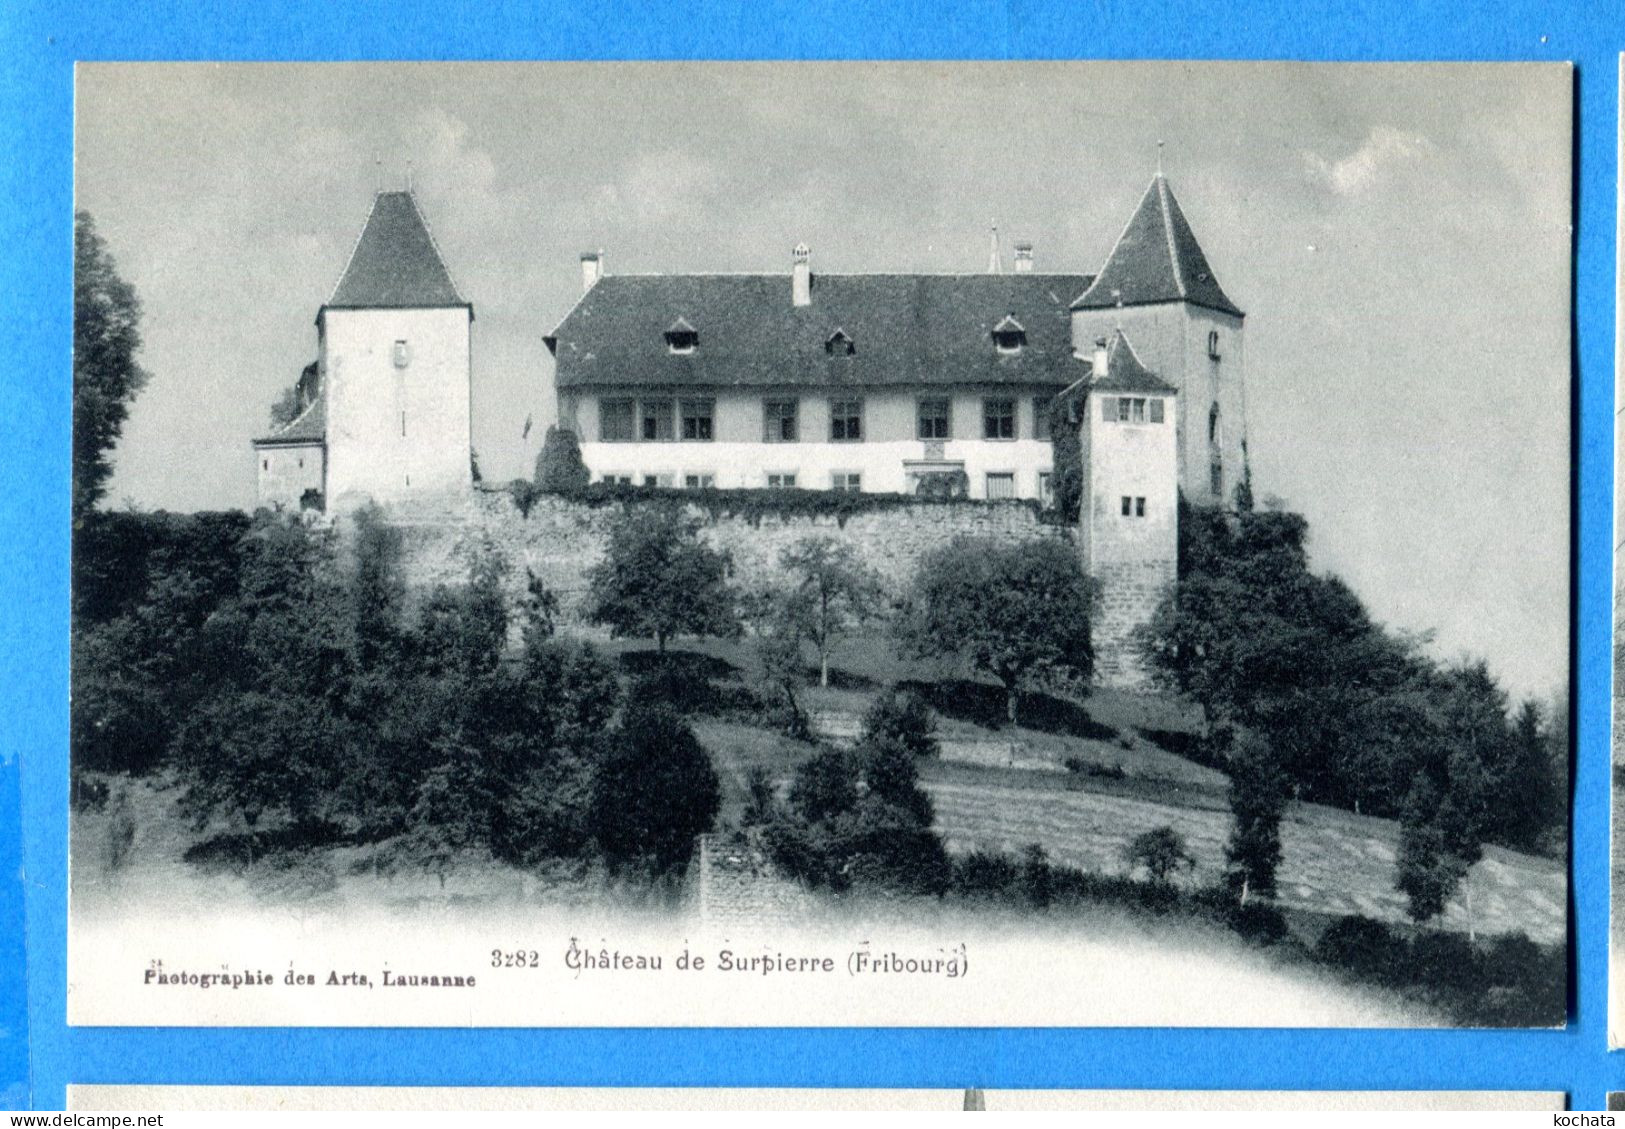 VIX059, Château De Surpierre Fribourg, 3282, Non Circulée - Fribourg